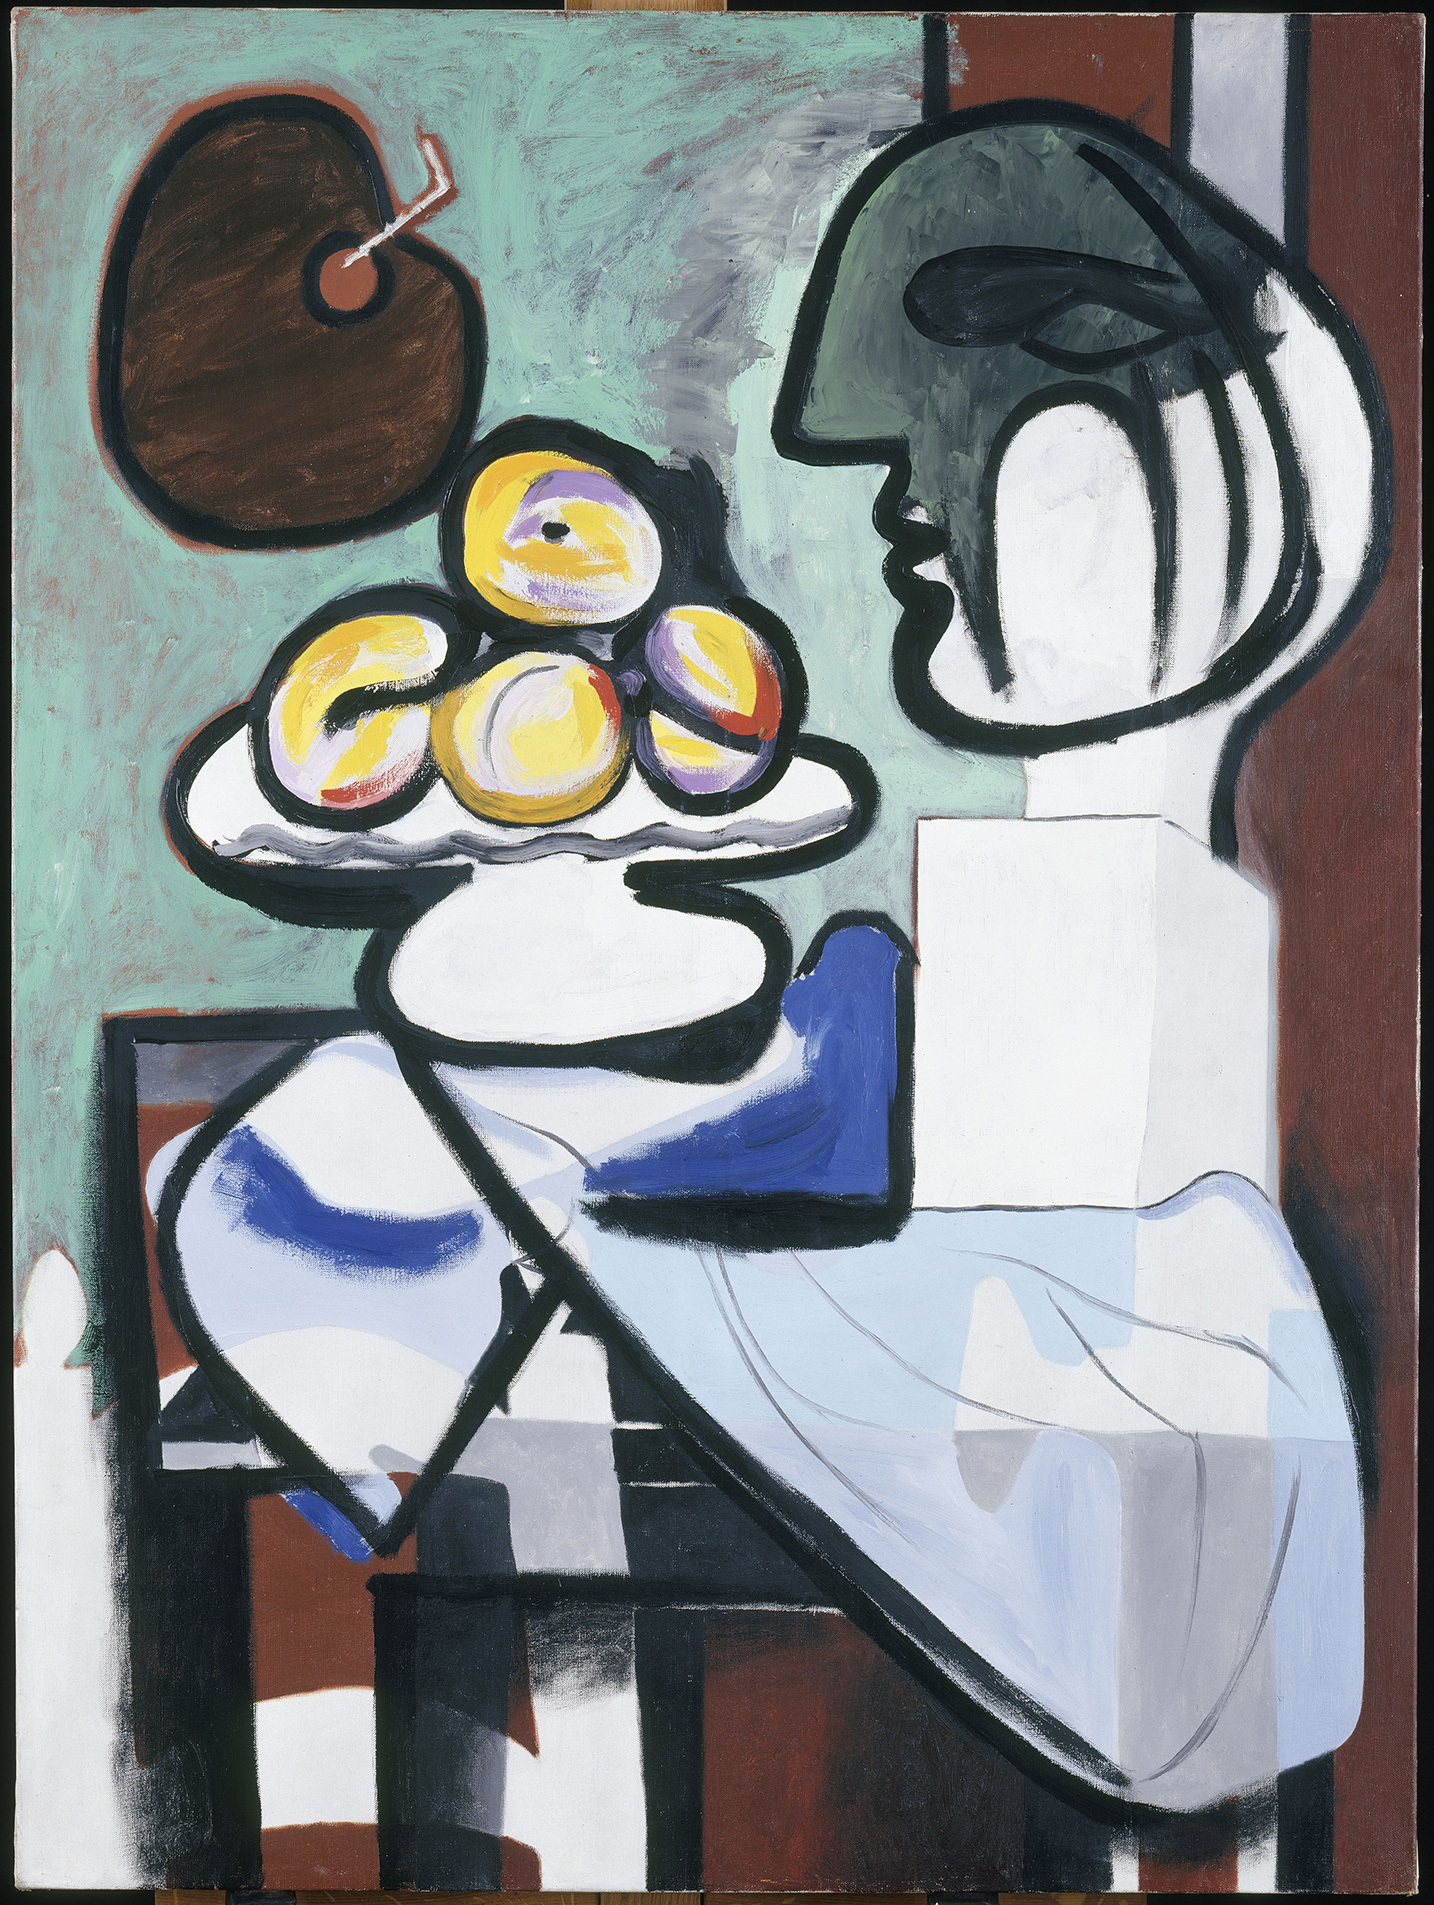 Picasso - Nature morte : buste, coupe et palette - MP140 - 18-501847